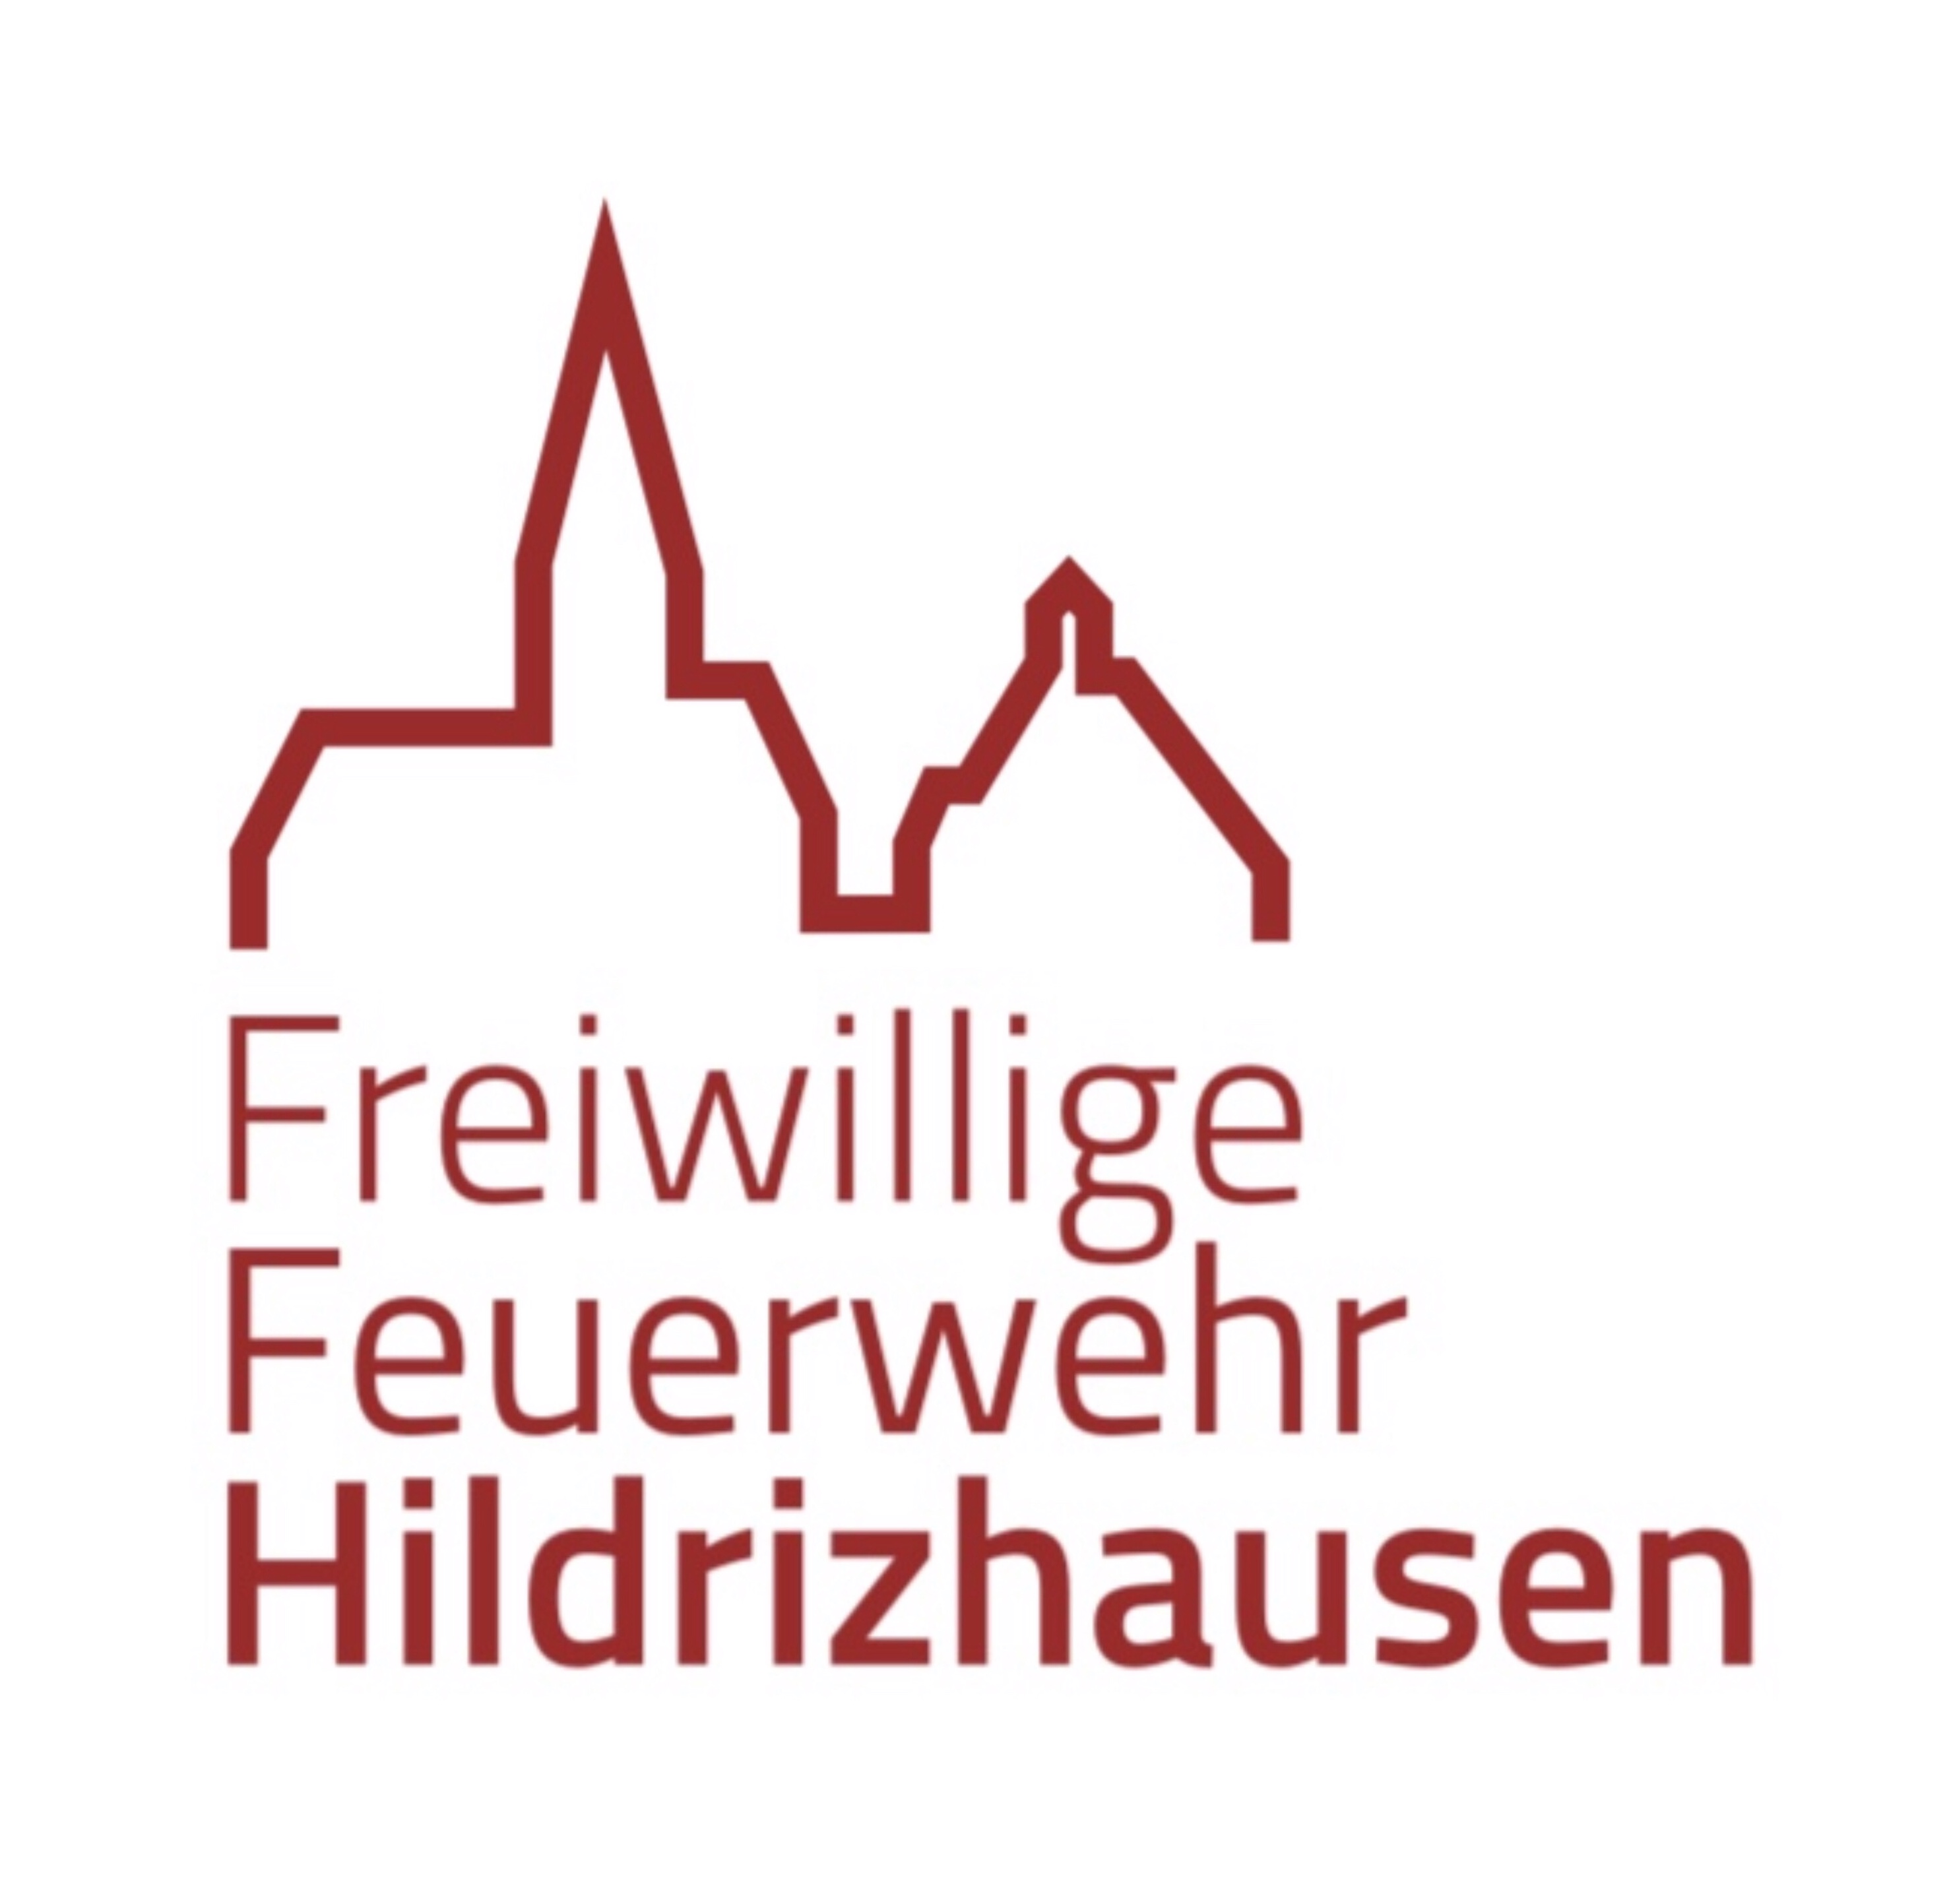  Feuerwehr Hildrizhausen Logo 